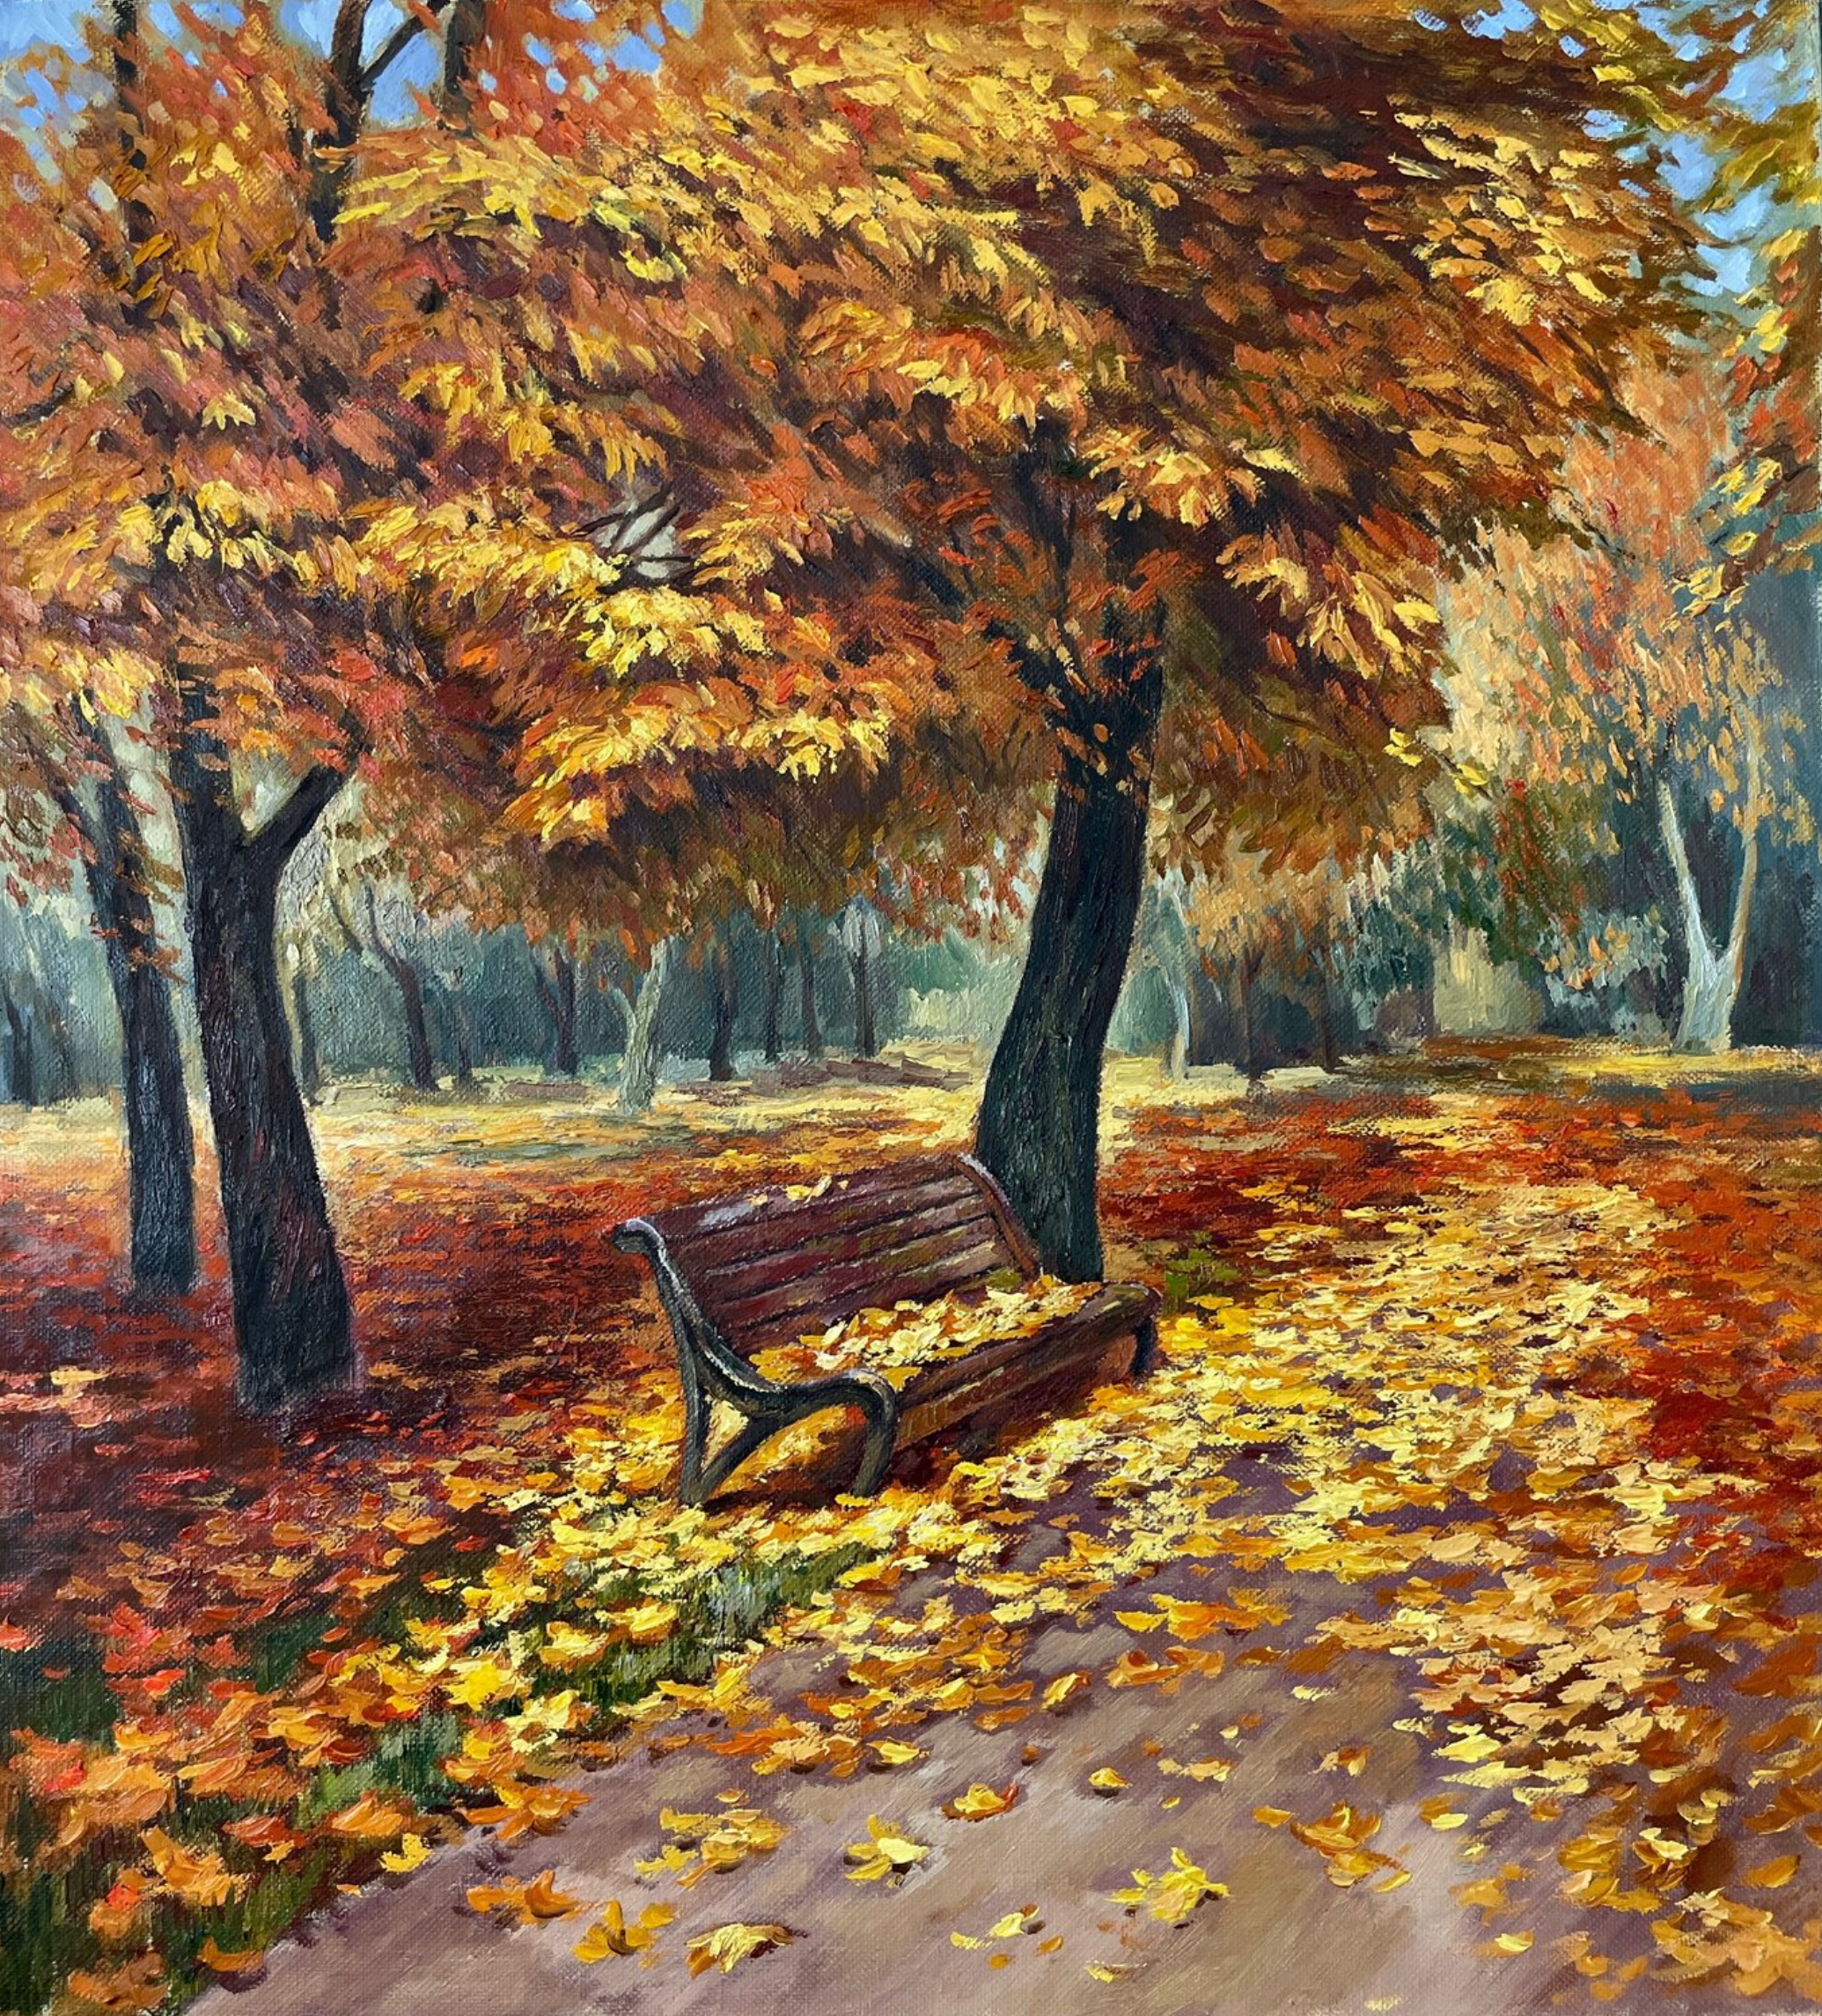 Anna Reznikova's "Leaf Fall" Gemälde zeigt eine herrliche Herbstlandschaft. Eine Parkbank mit Herbstblättern in wunderbaren Braun, Gelb, roten Farben. Gemalt mit Pinseln auf Baumwollleinwand.